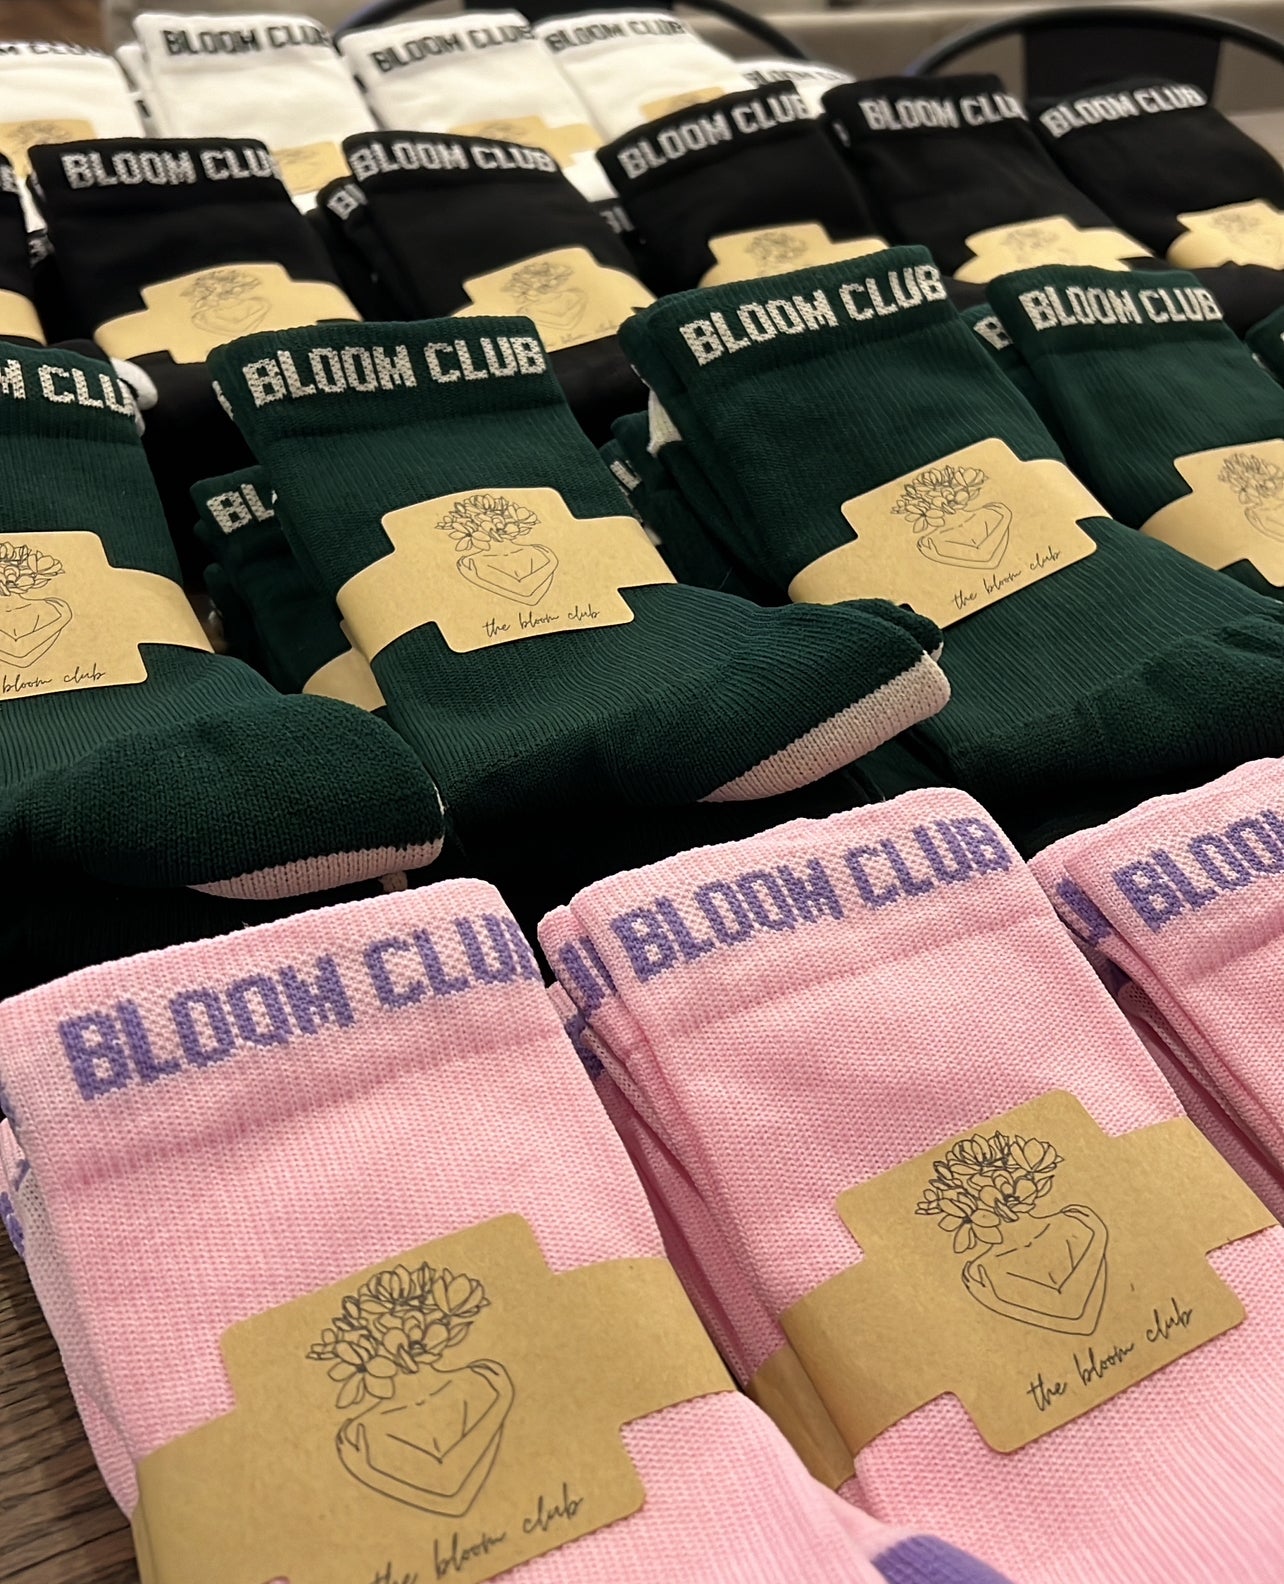 Pink Bloom Socks